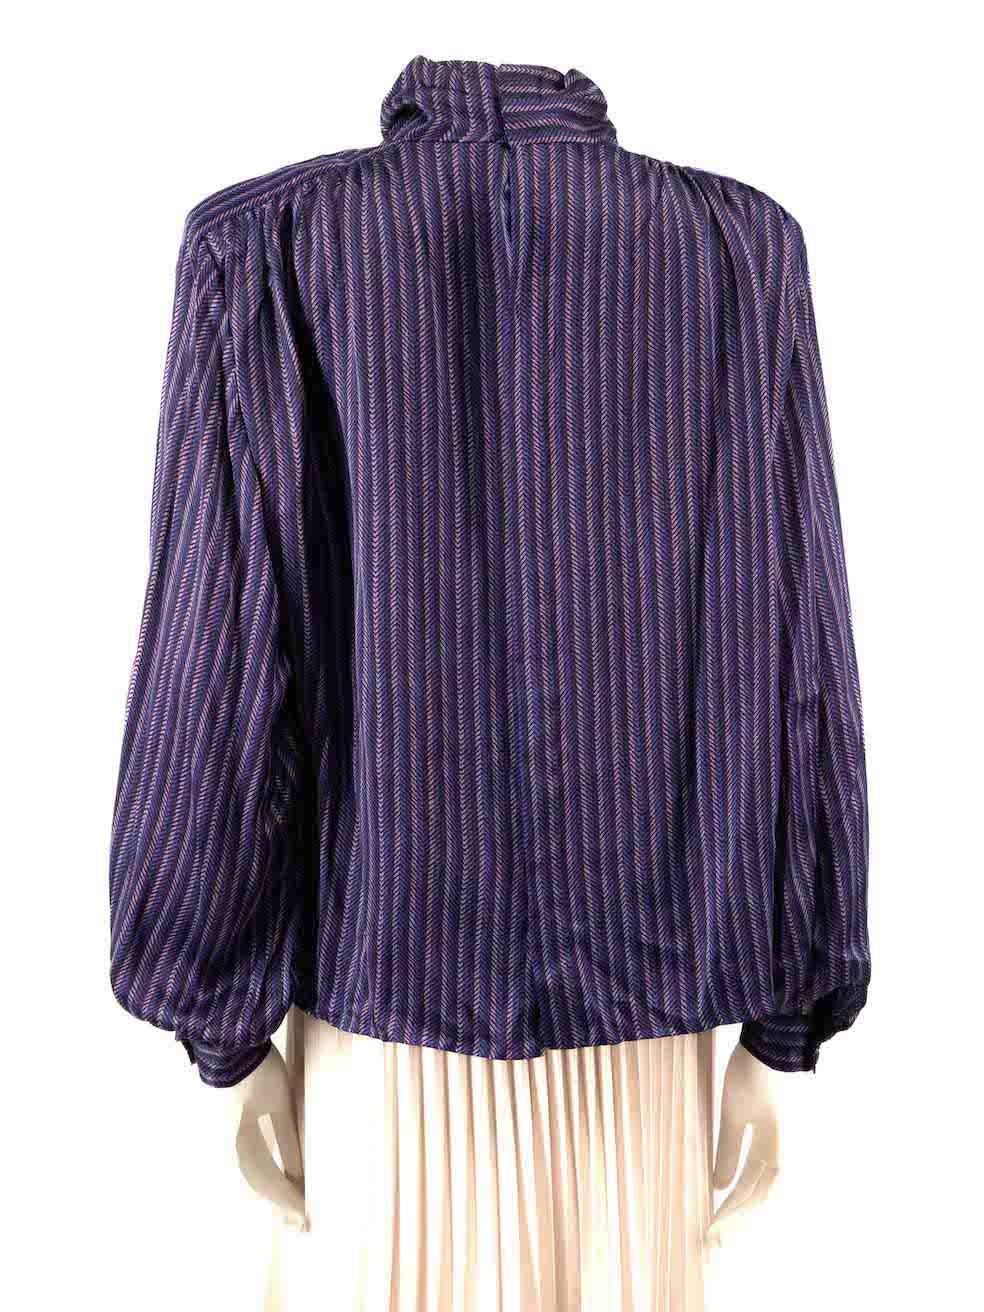 Valentino Garavani Purple Striped High Neck Blouse Size L In Good Condition For Sale In London, GB